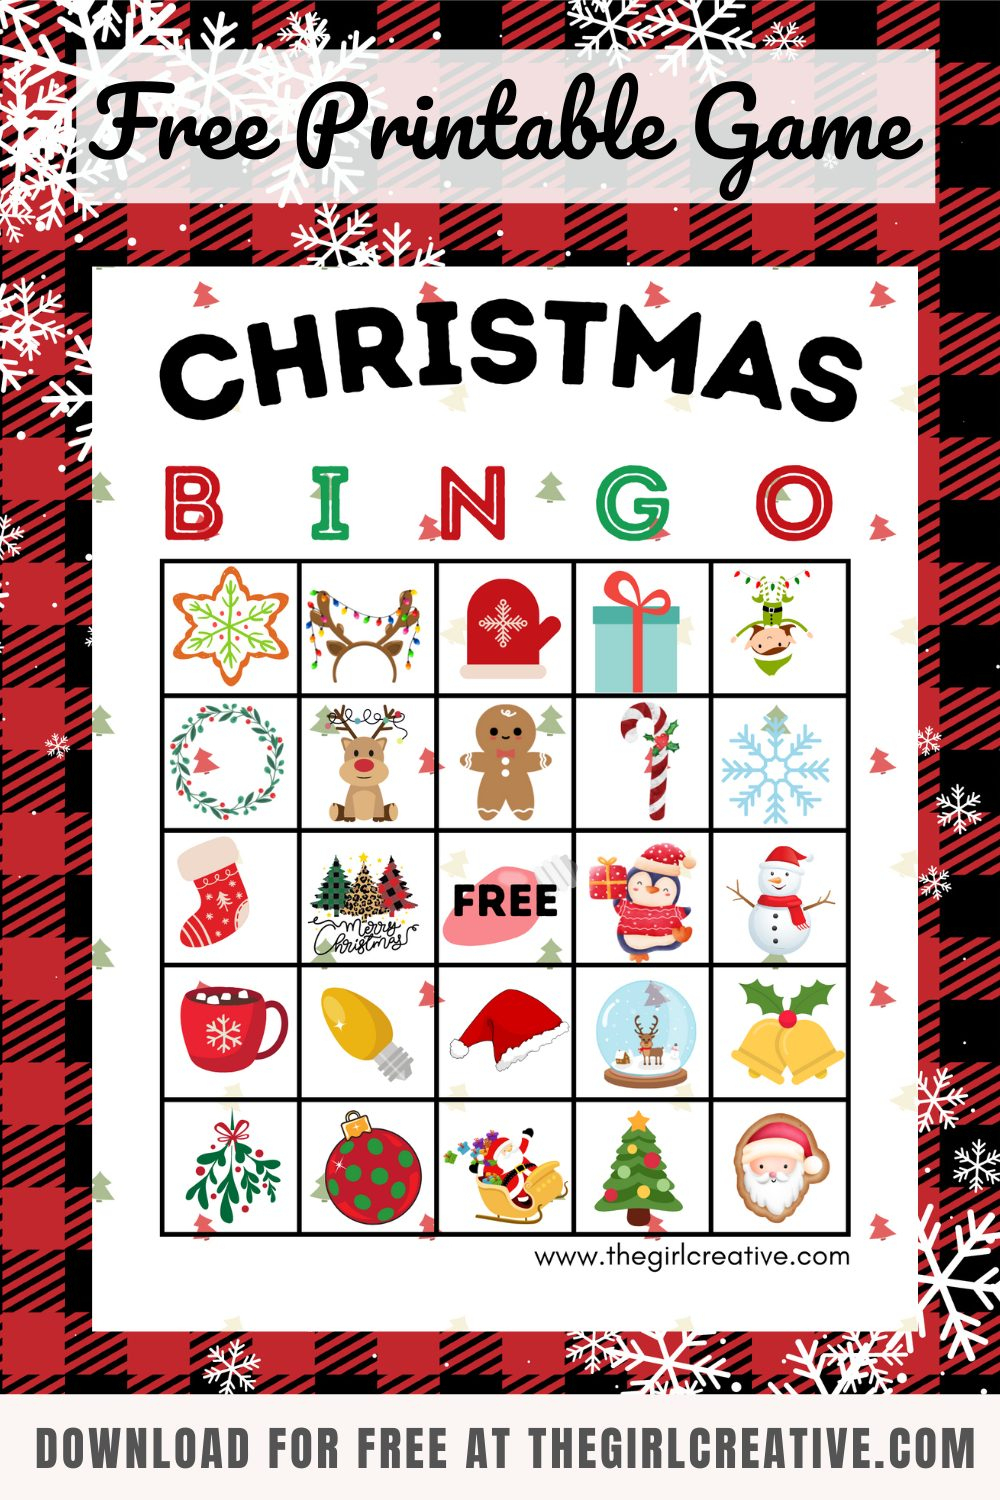 Free Printable Christmas Bingo Cards - The Girl Creative - Free Printable Christmas Bingo Templates